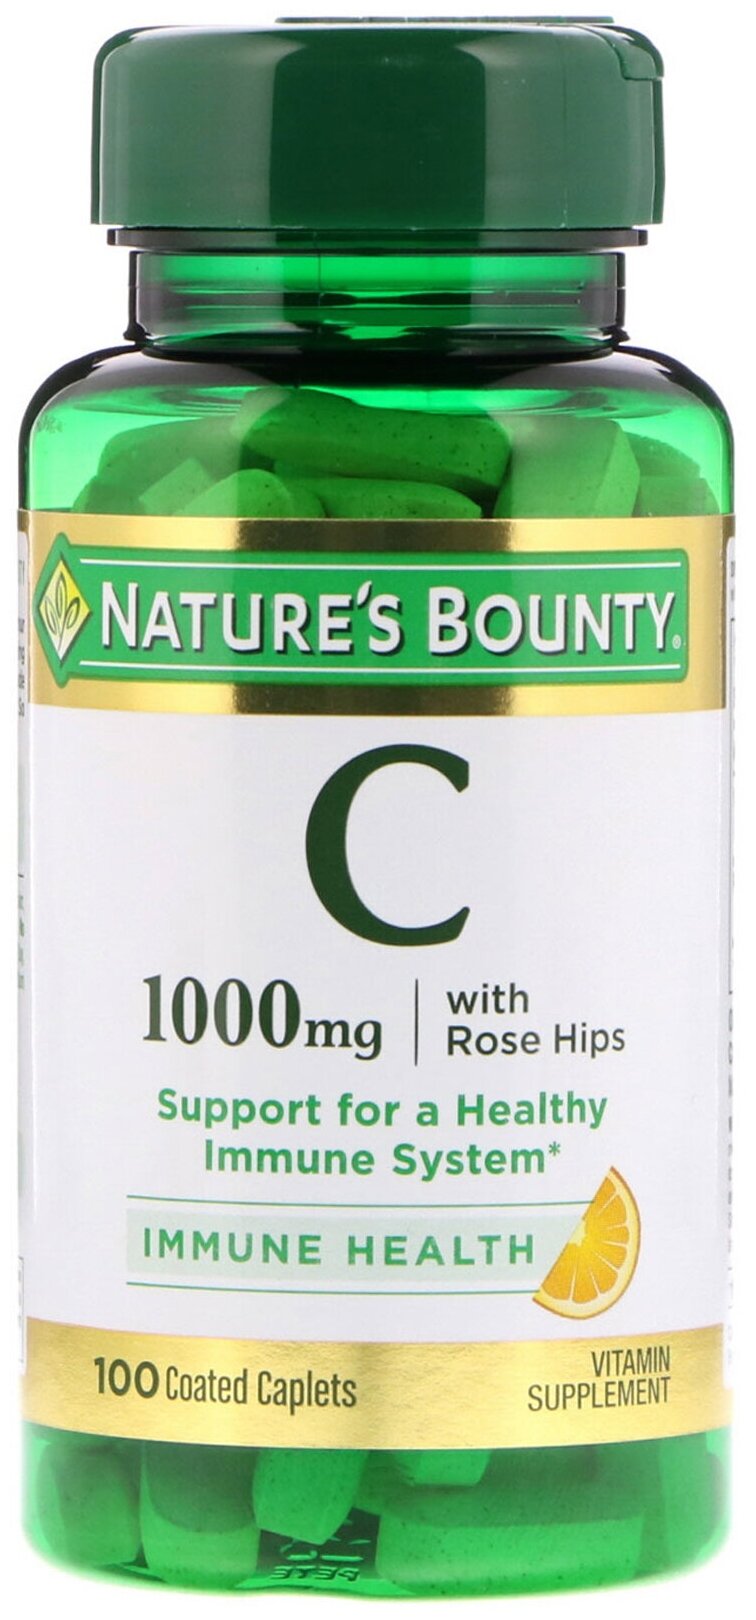 Nature's Bounty - Vitamin C 1000 мг with Rose Hips (100 таблеток) - Витамин С с шиповником для поддержки иммунитета